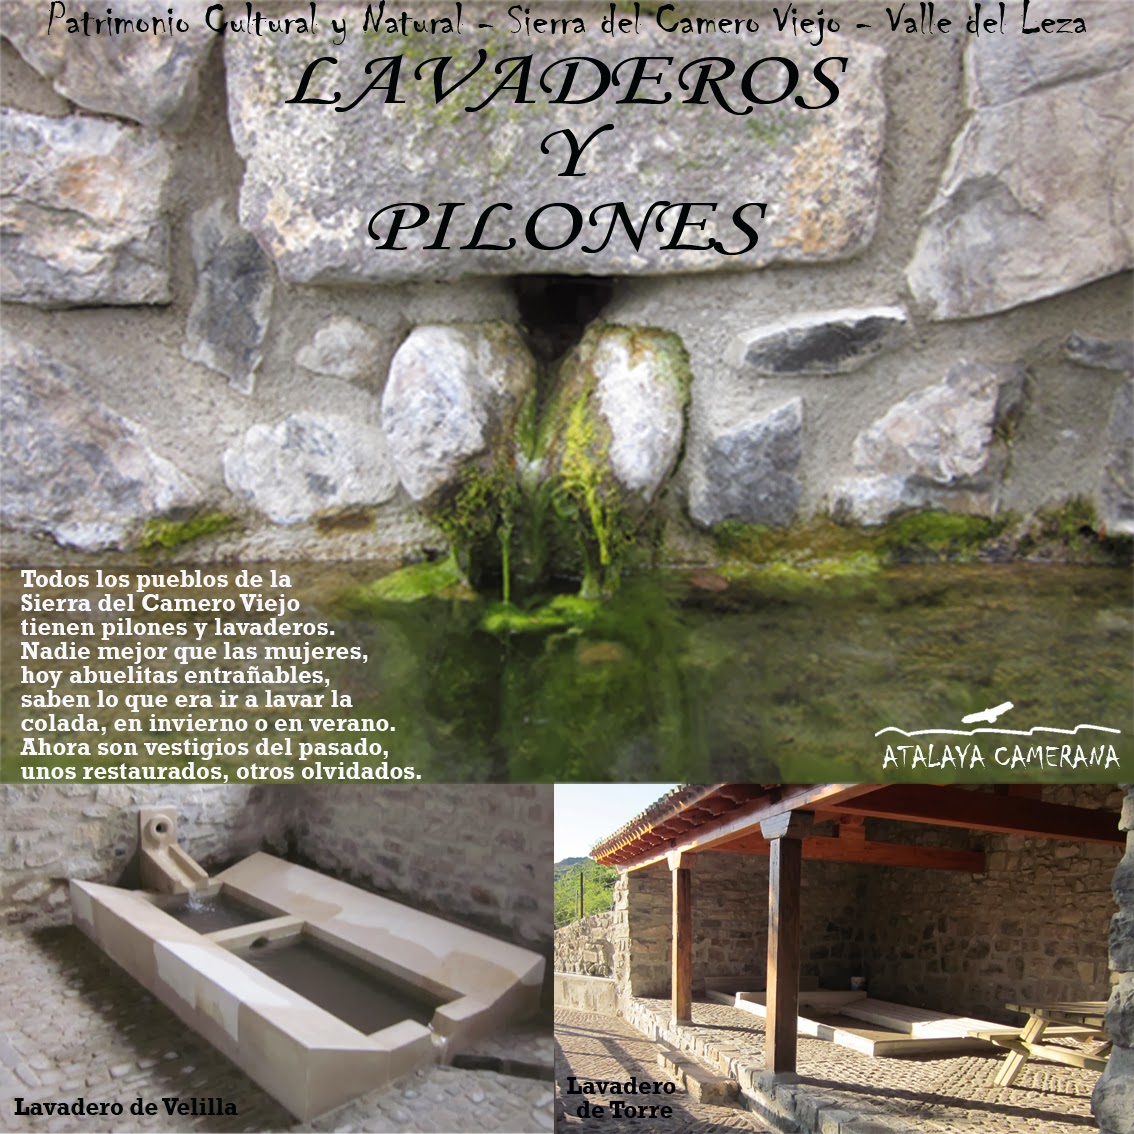 Sierra del Camero Viejo - Valle del Leza. Patrimonio Cultural y Natural. Lavaderos y Pilones.